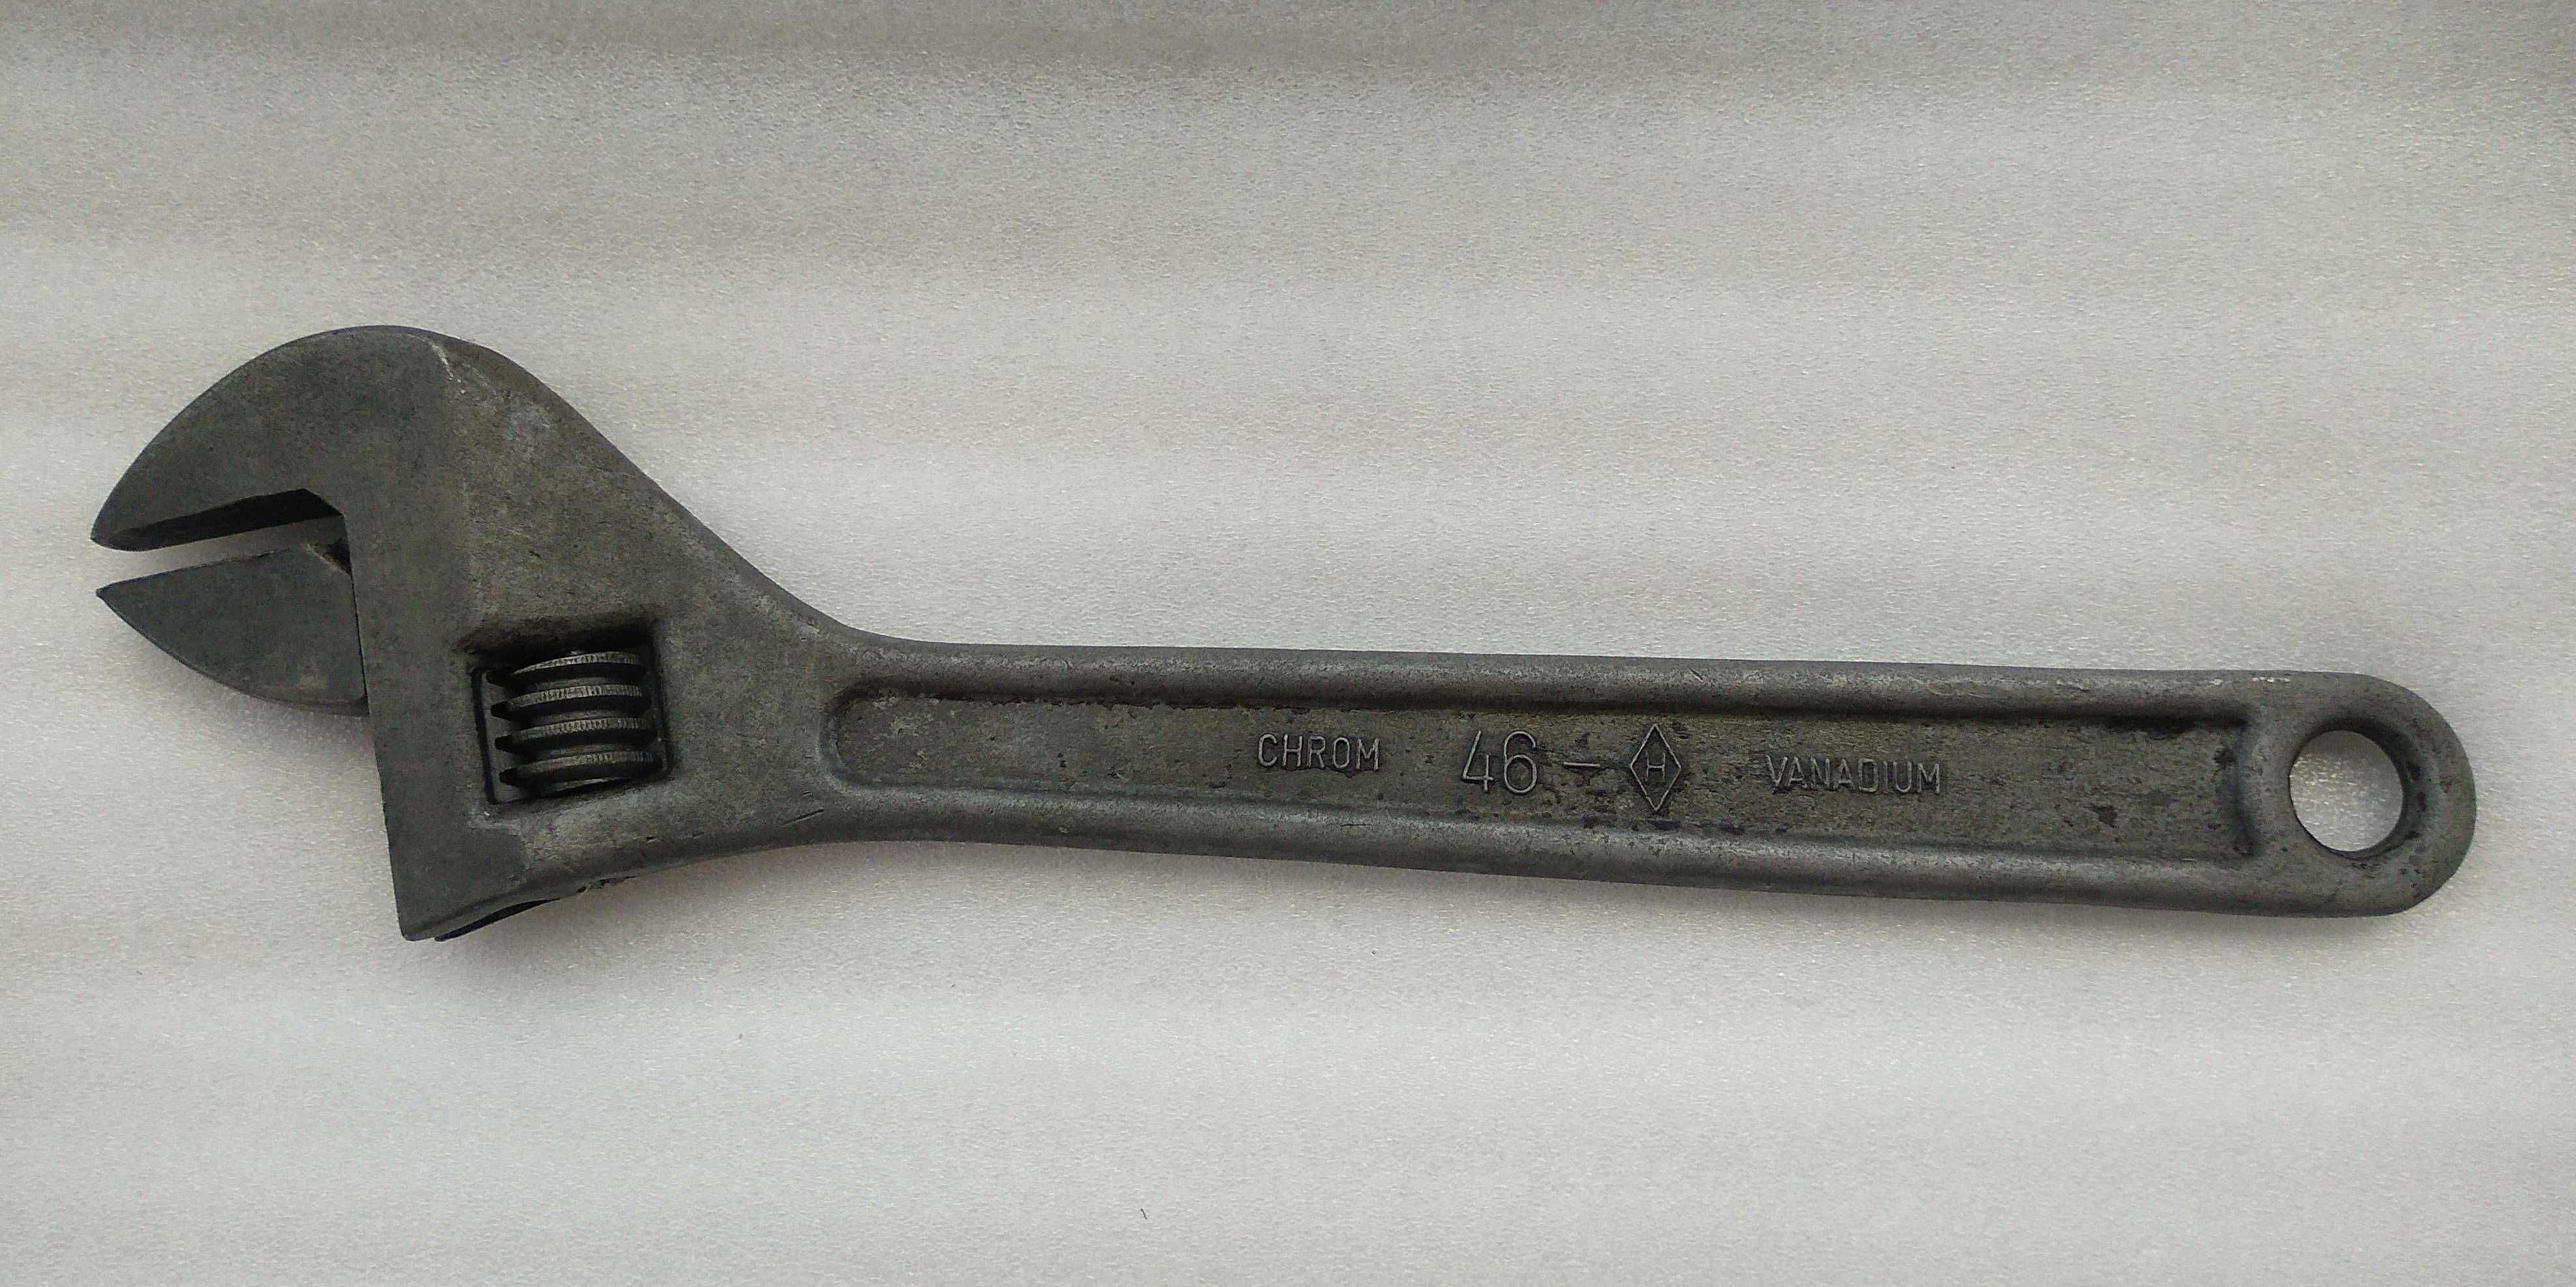 Трубный Разводной ключ Качество СССР - Большой мощный ключ длина 41 см